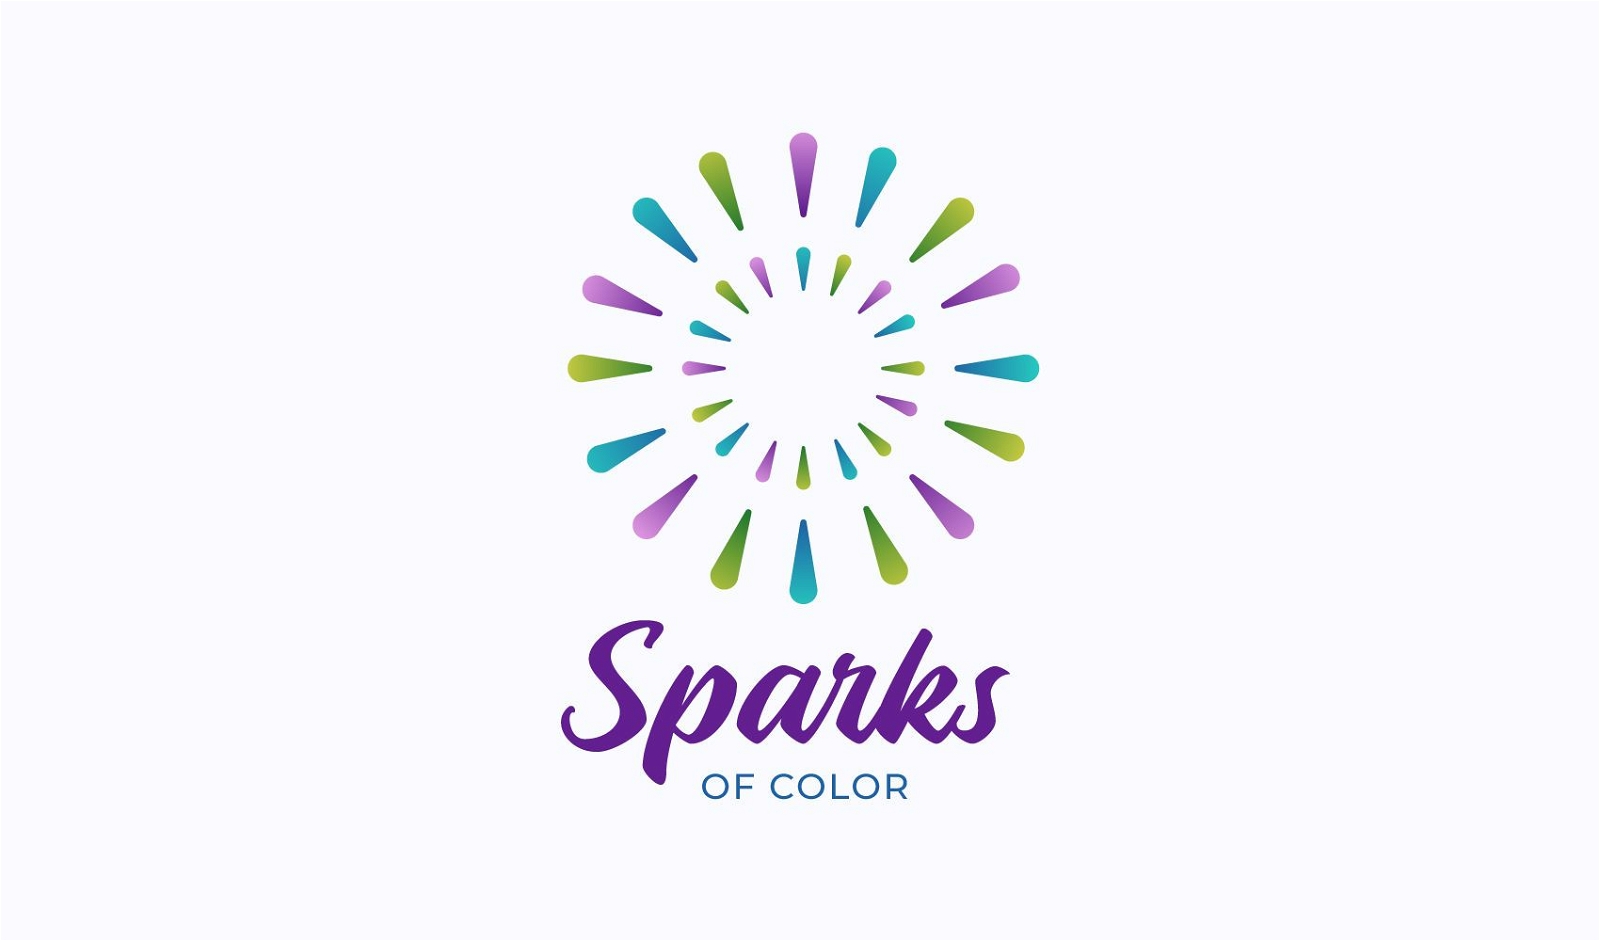 Sparks of color logo design